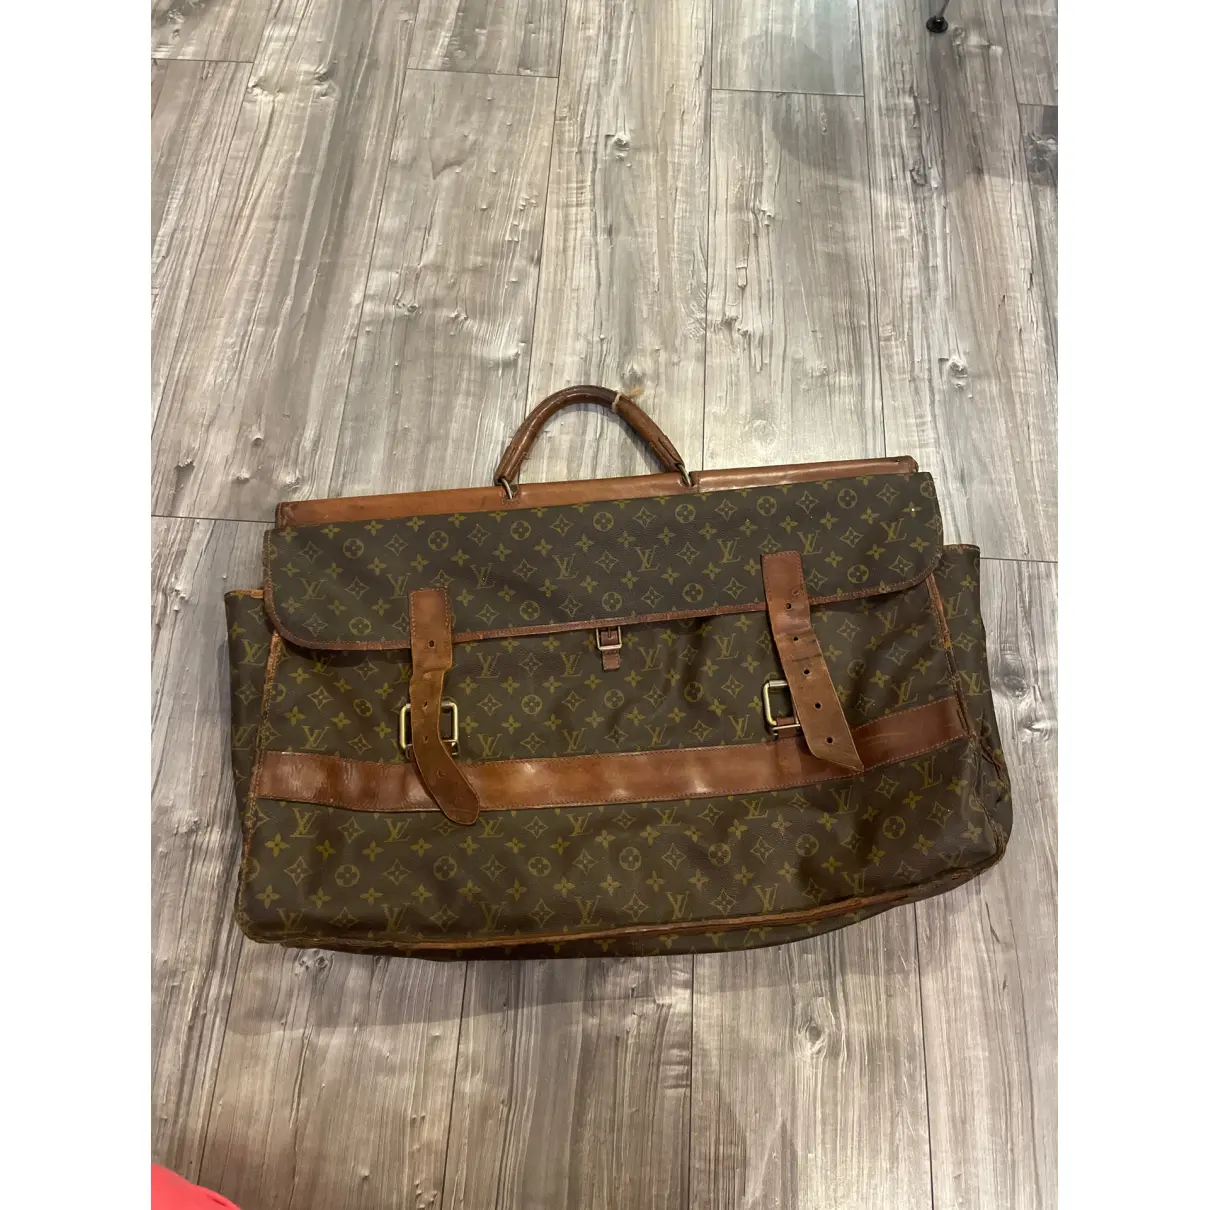 Leather travel bag Louis Vuitton - Vintage